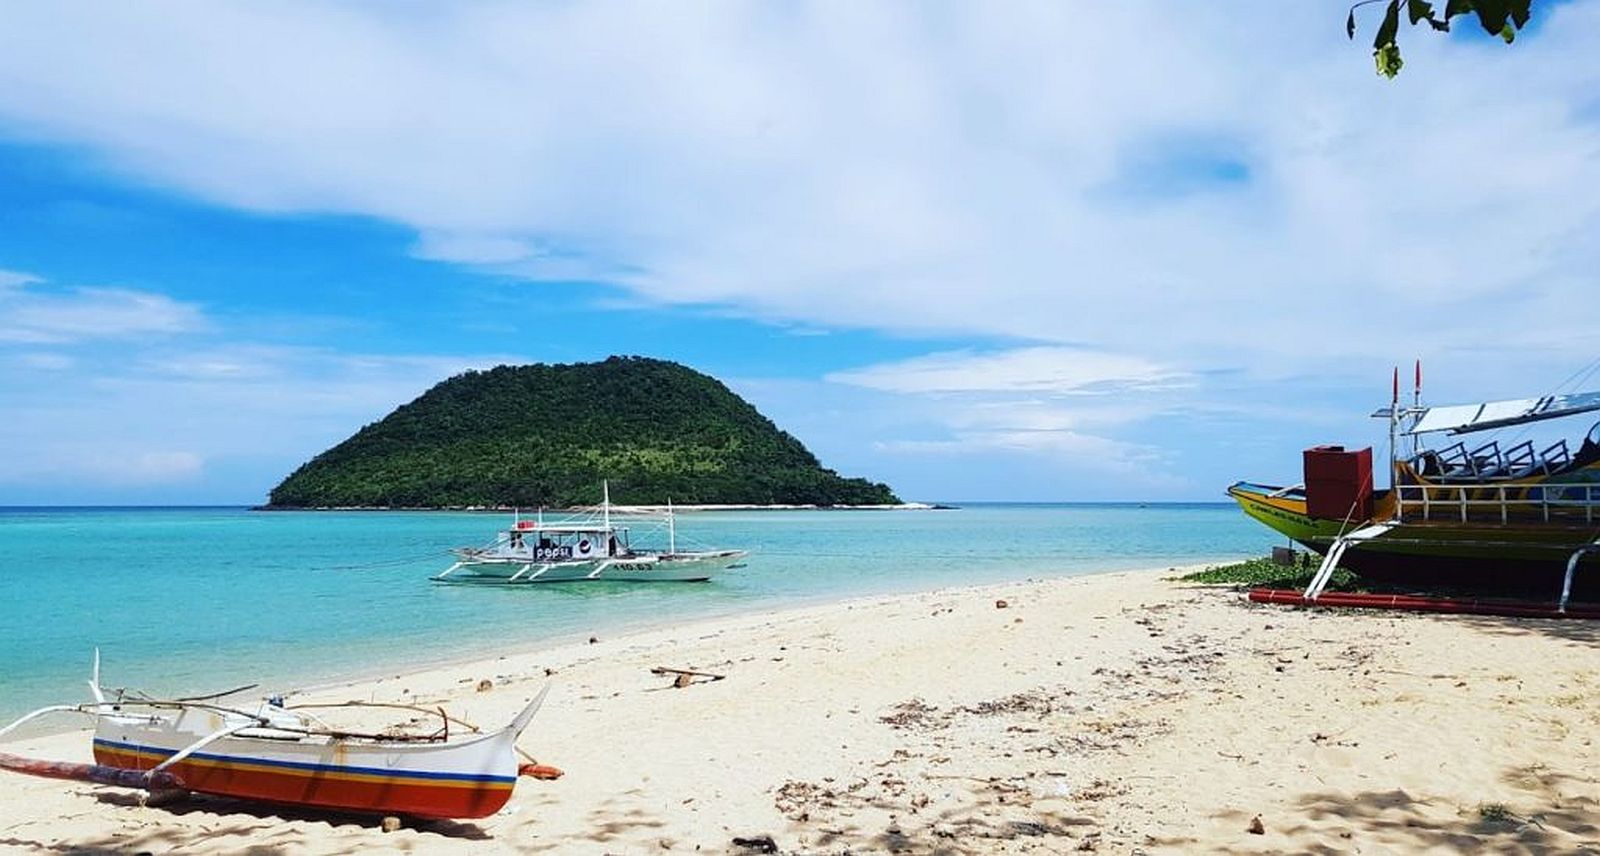 PHILIPPINEN REISEN - INSELN - INSELN DER VISAYAS -Touristische Beschreibung der Insel Sicogon